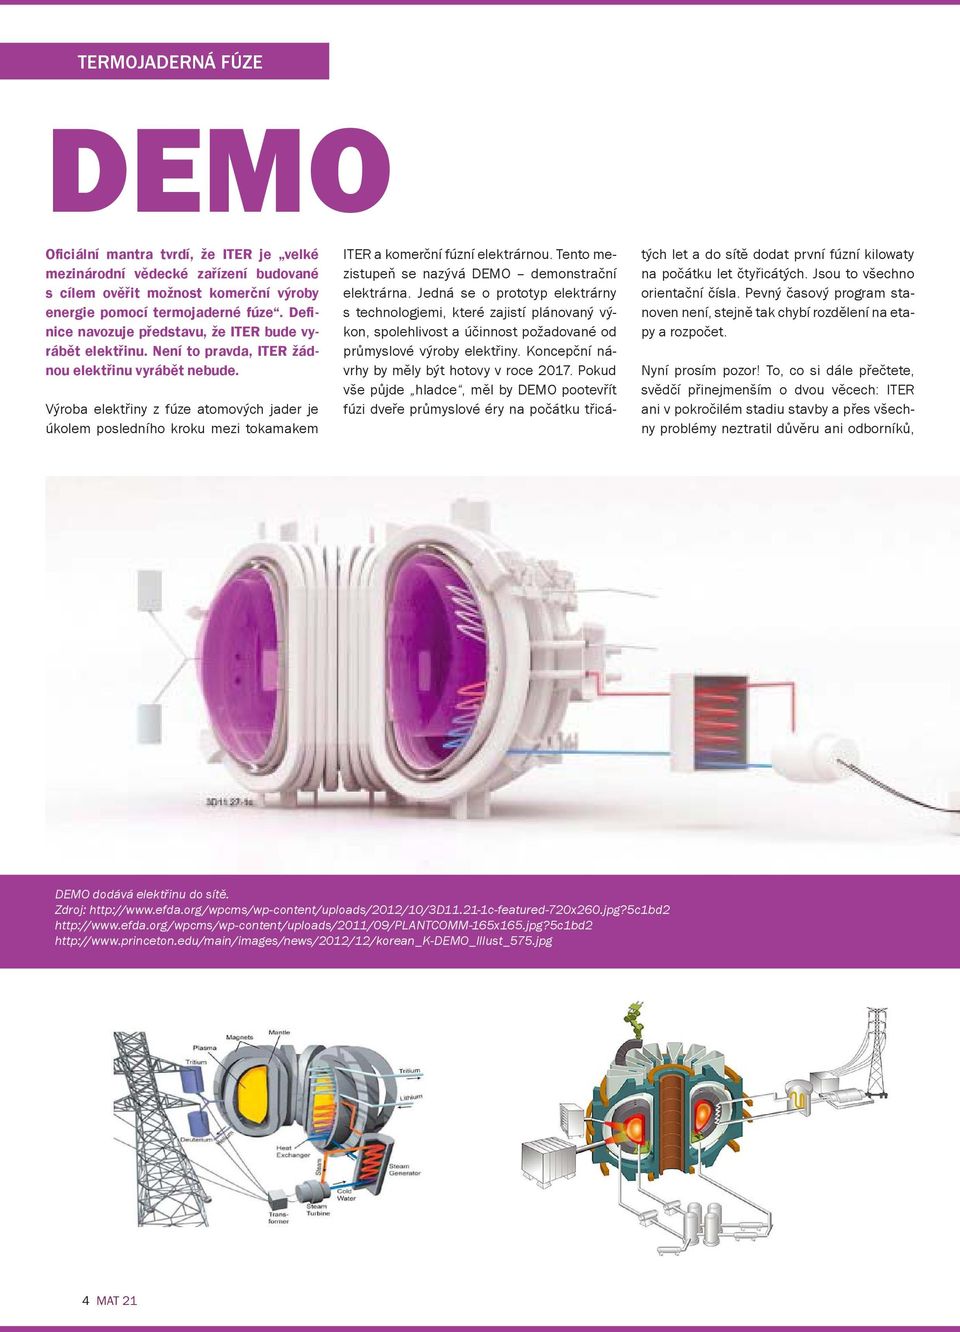 Výroba elektřiny z fúze atomových jader je úkolem posledního kroku mezi tokamakem ITER a komerční fúzní elektrárnou. Tento mezistupeň se nazývá DEMO demonstrační elektrárna.